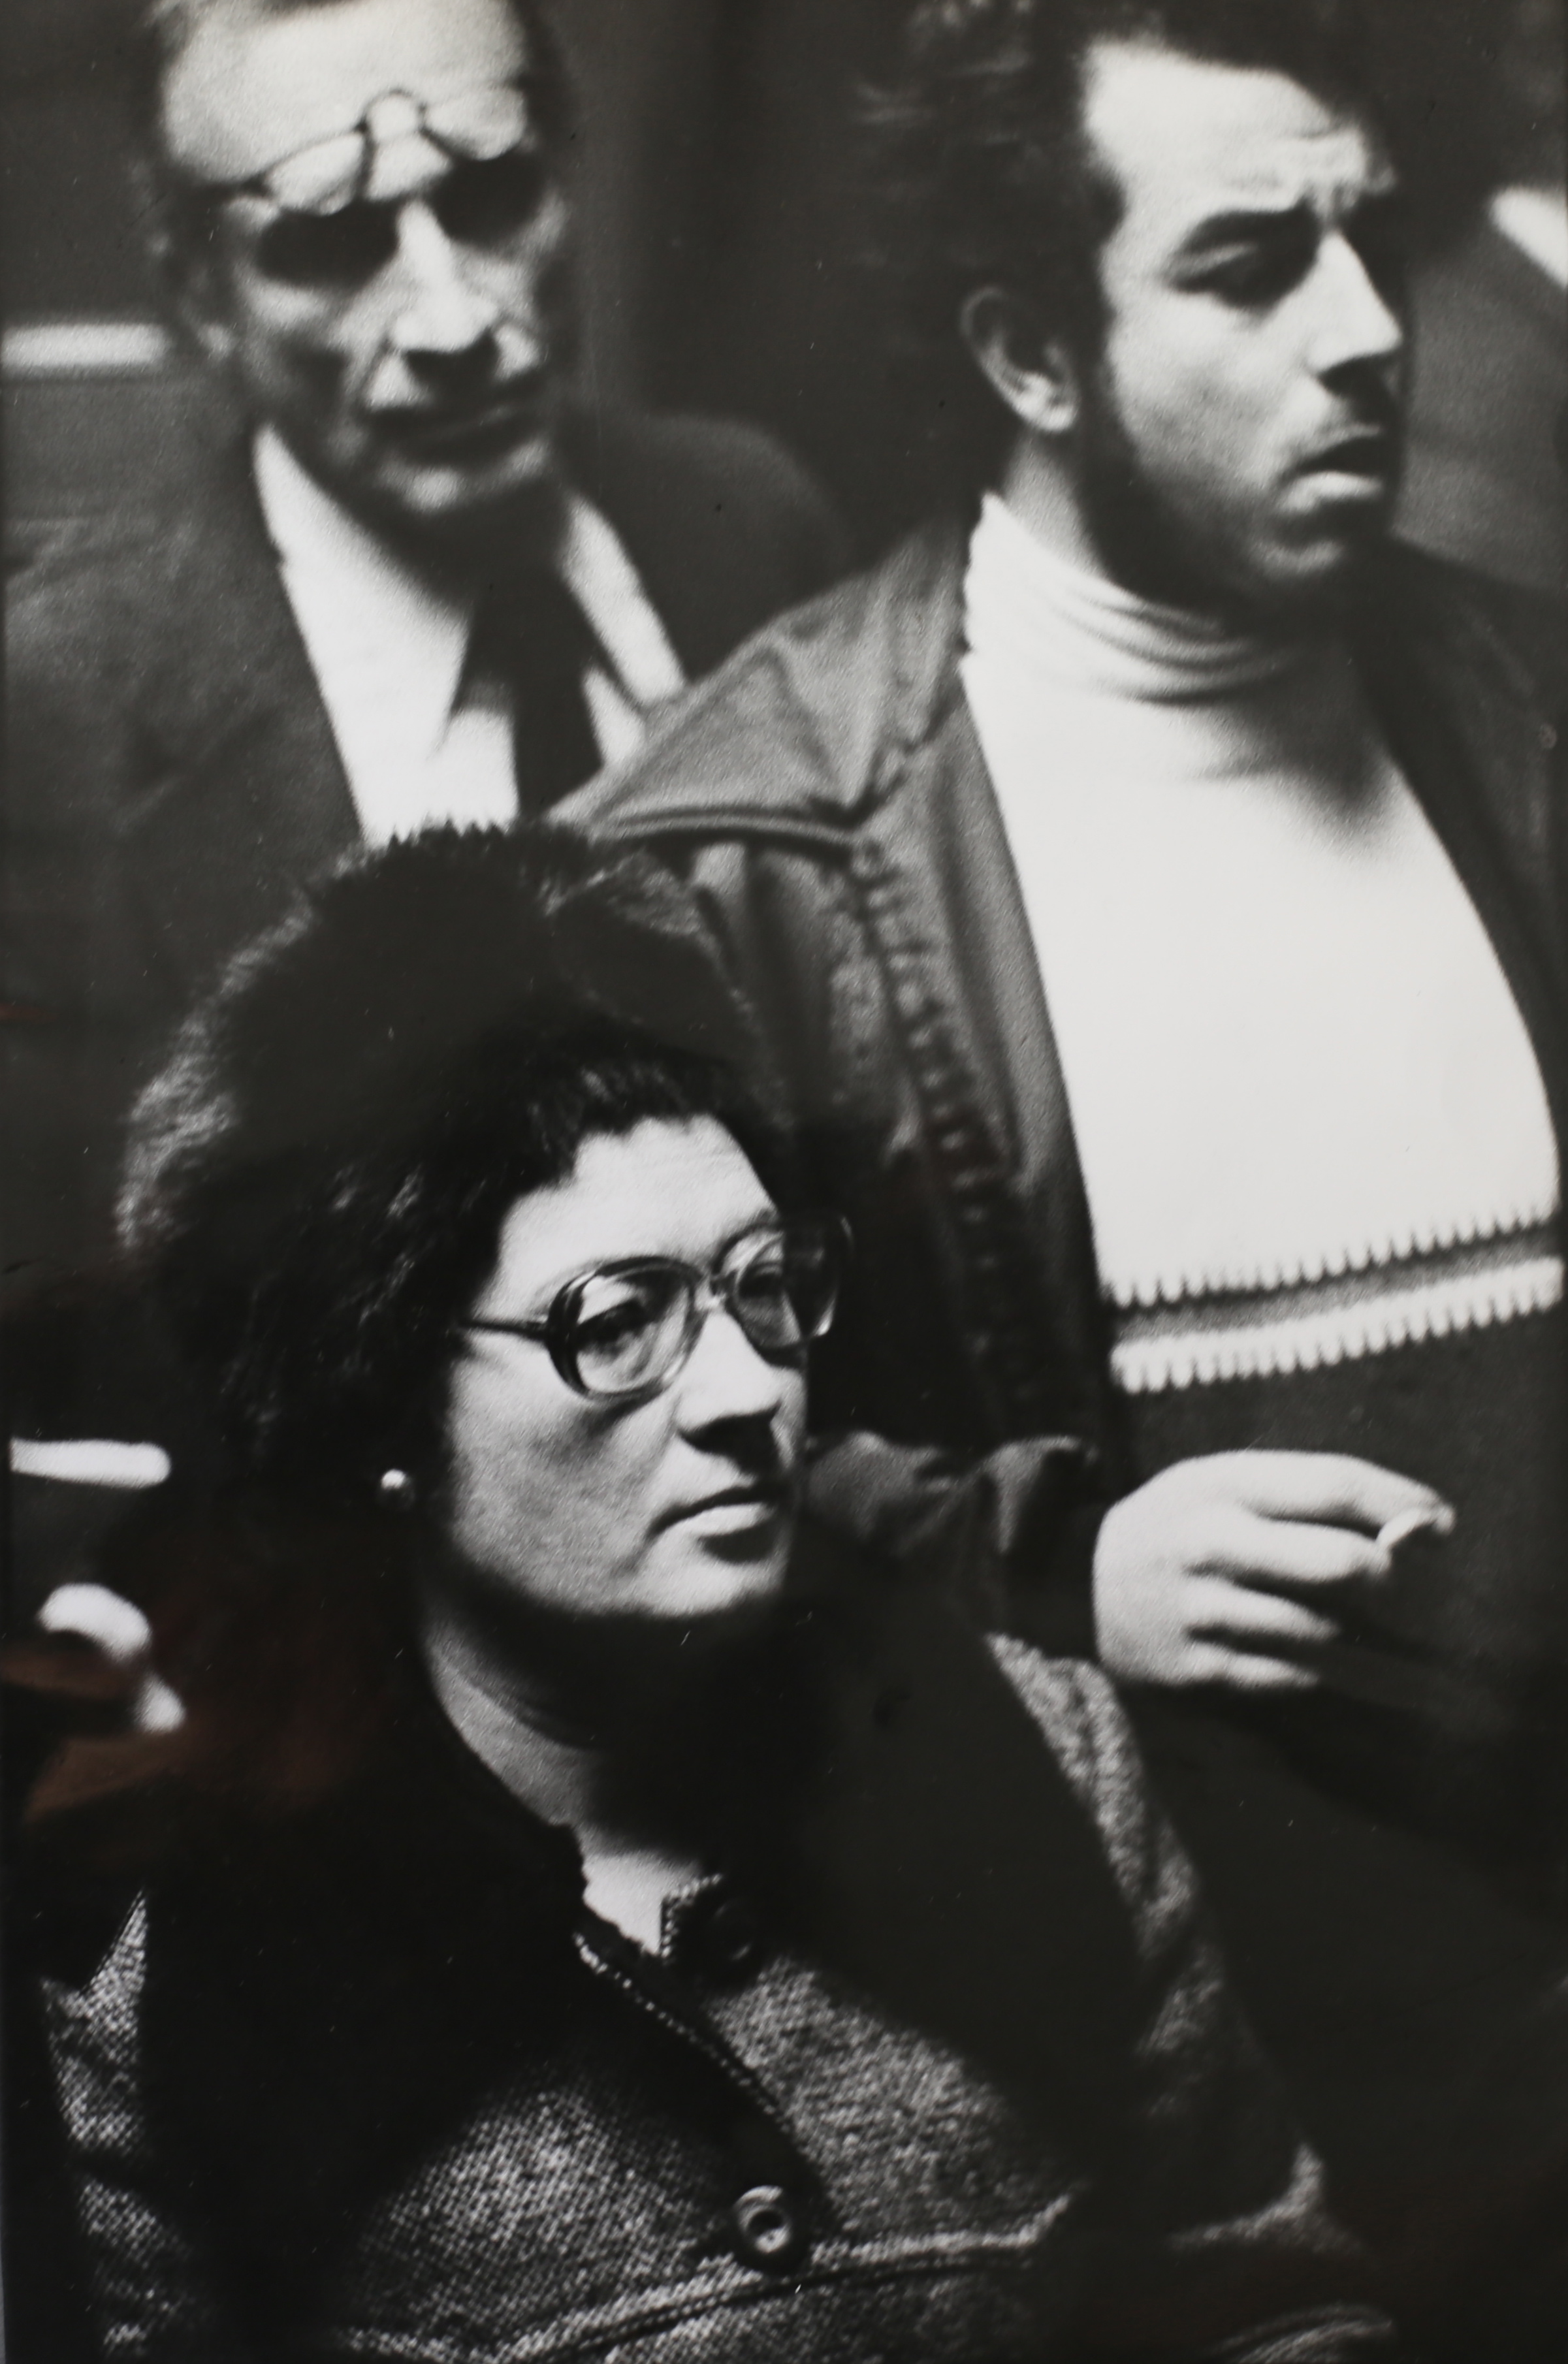   Parenti dei detenuti politici,&nbsp;conferenza stampa a Madrid nei giorni della morte di Franco. Madrid, 1975.&nbsp;  